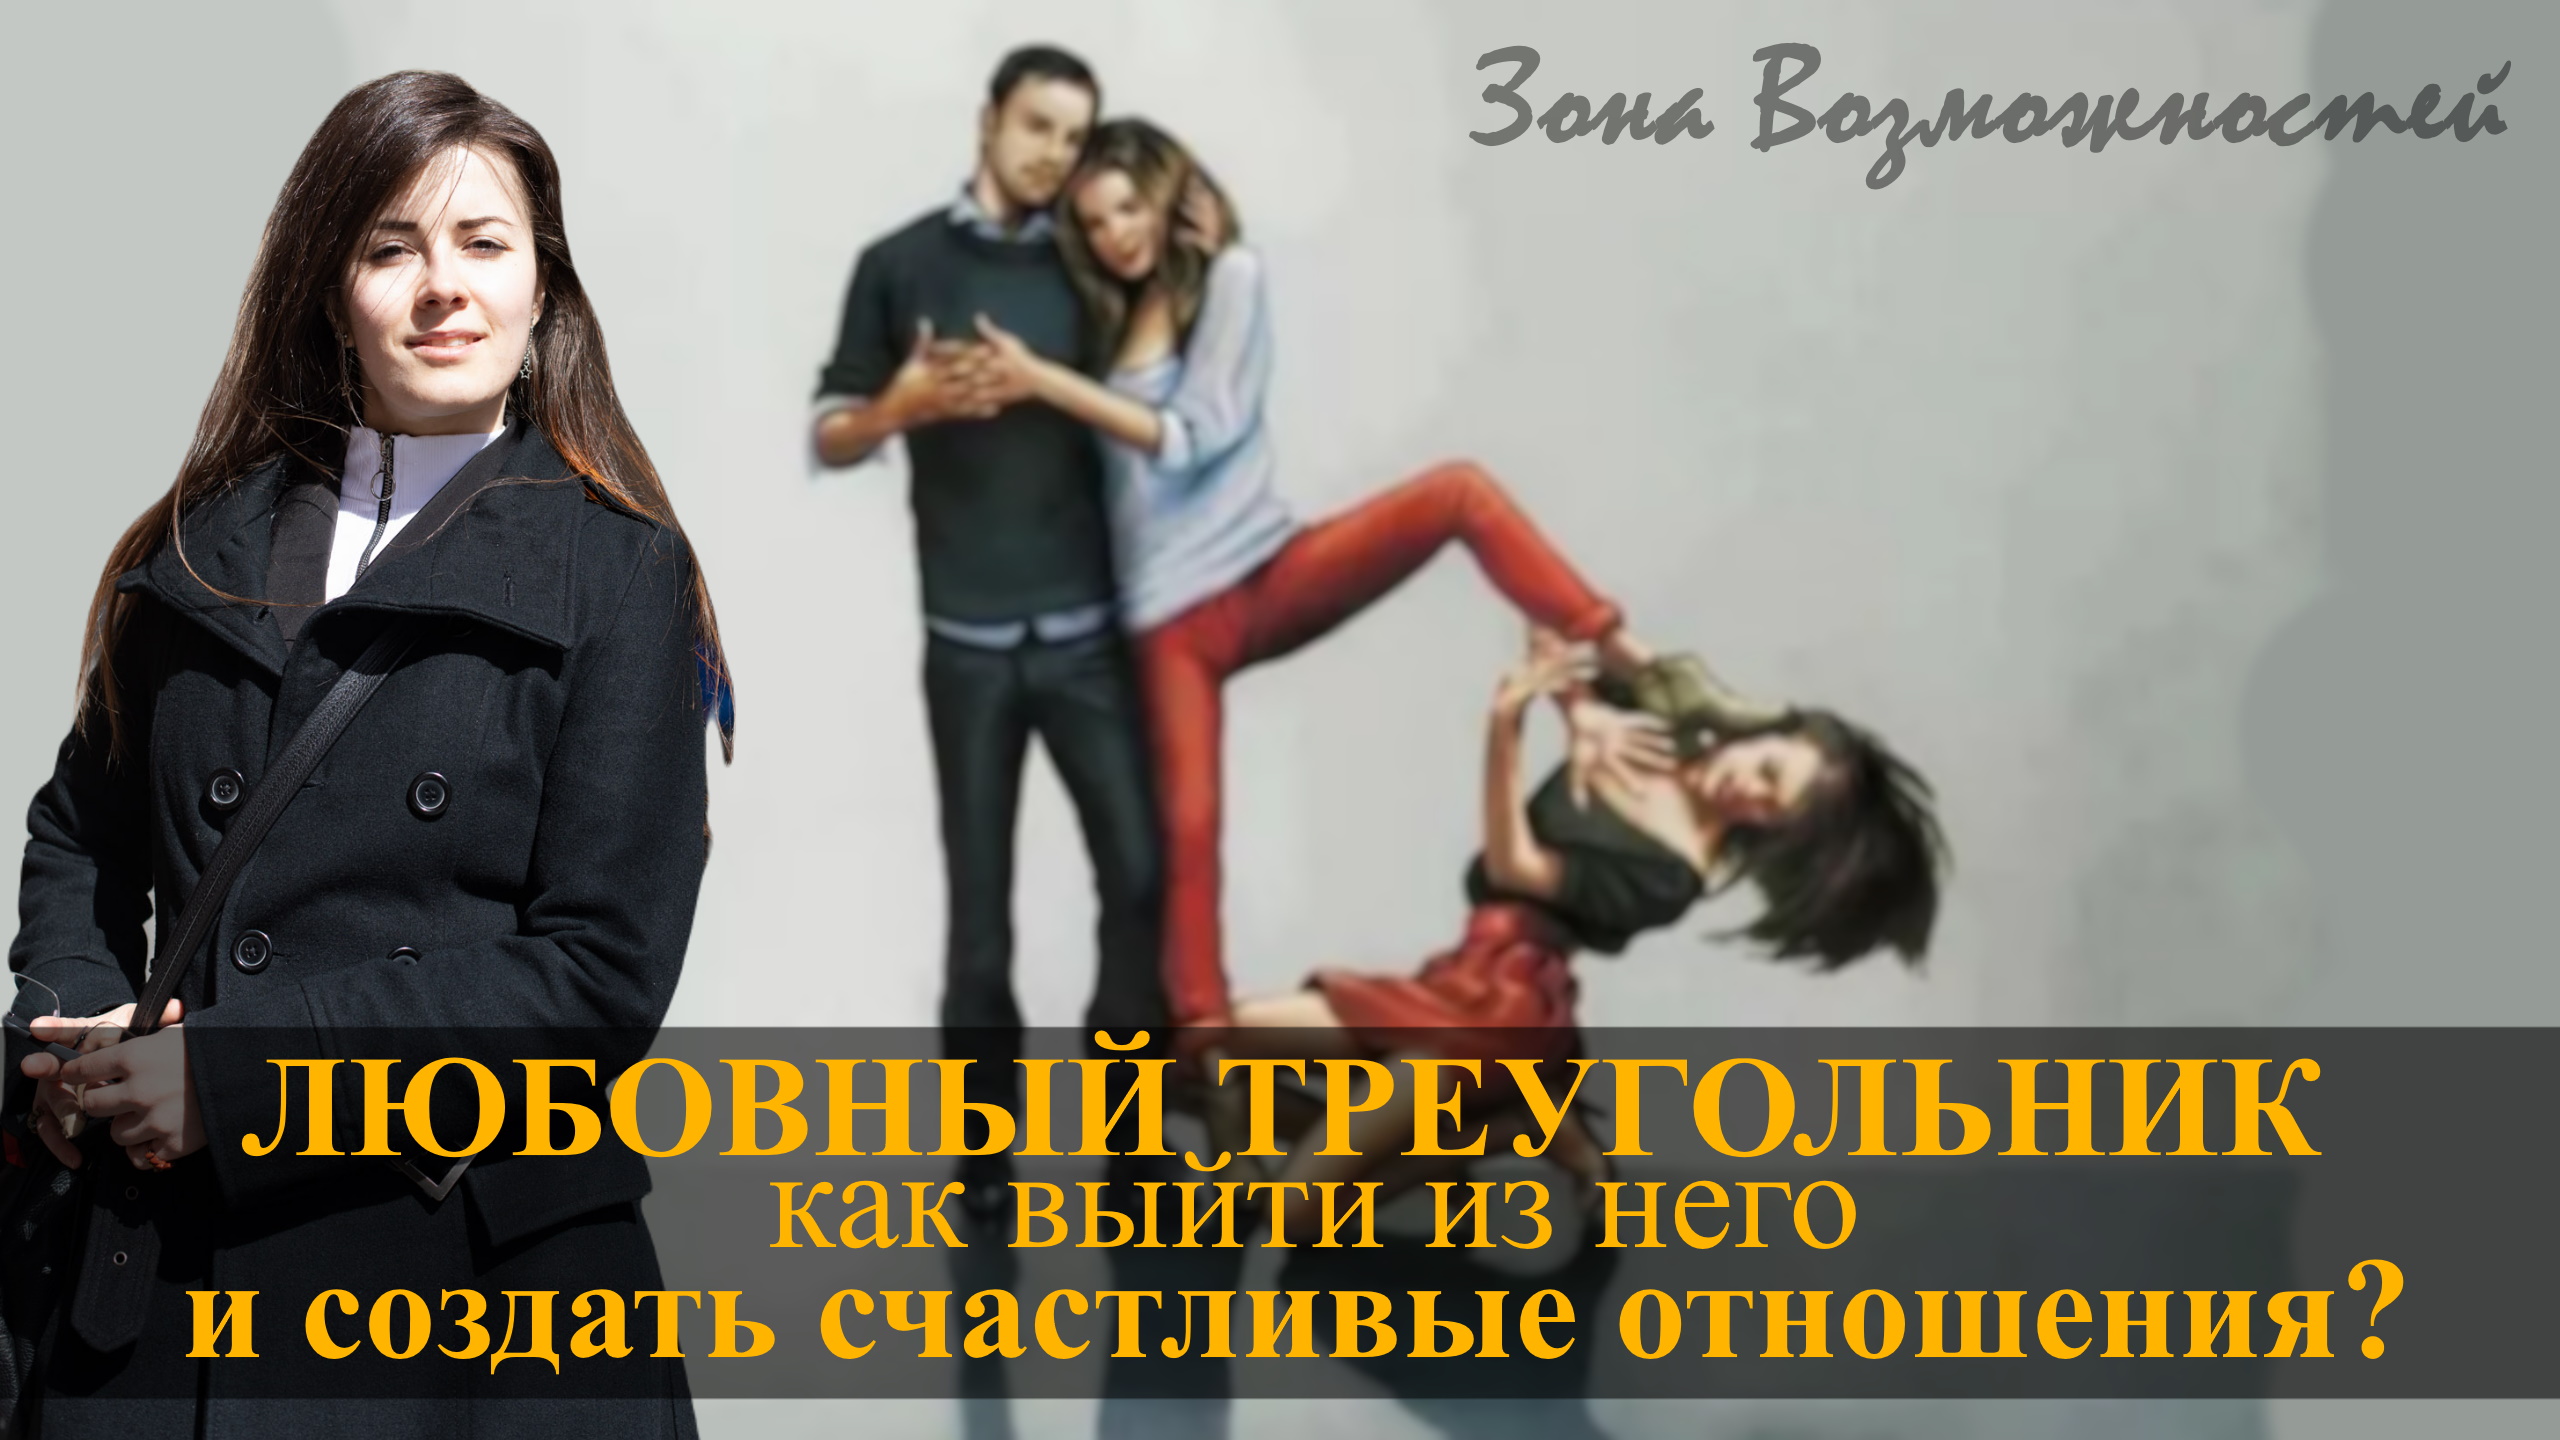 петросян монолог супружеские измены фото 69